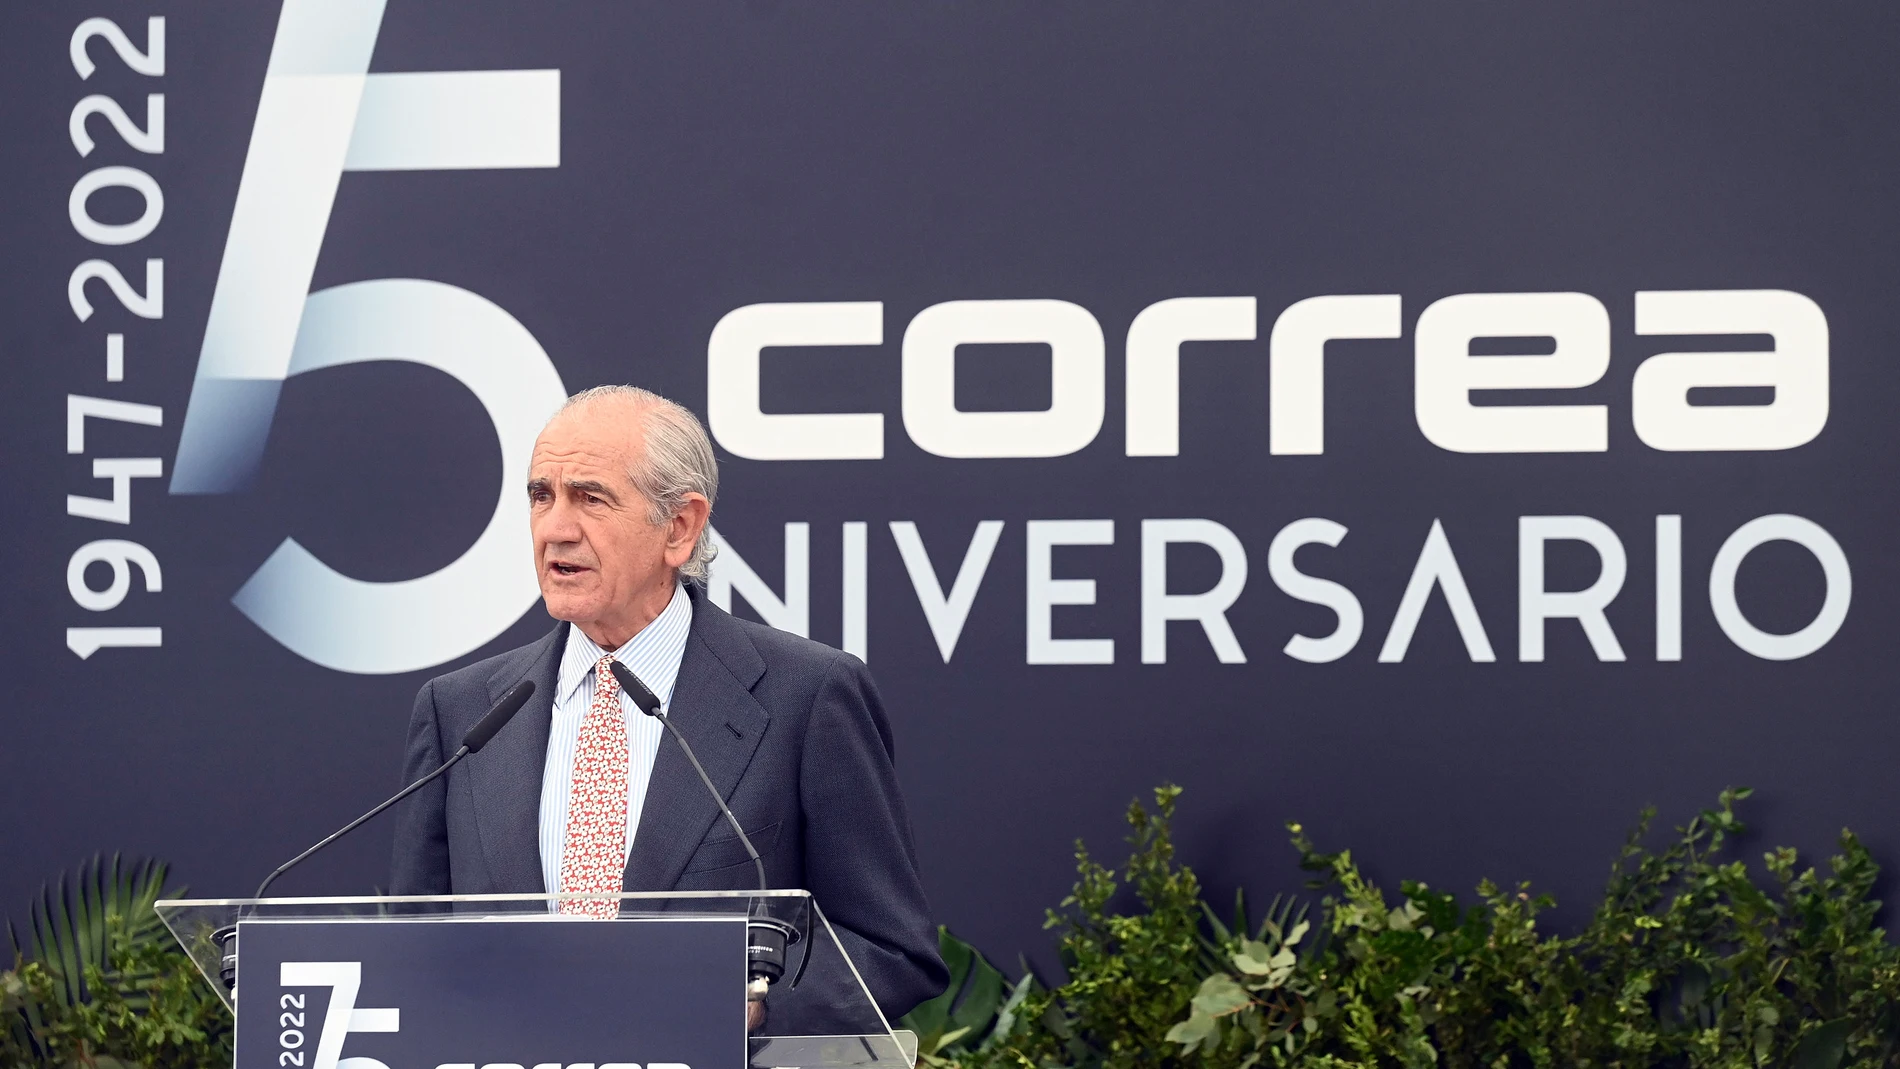 El presidente de la compañía, José Ignacio Nicolás Correa